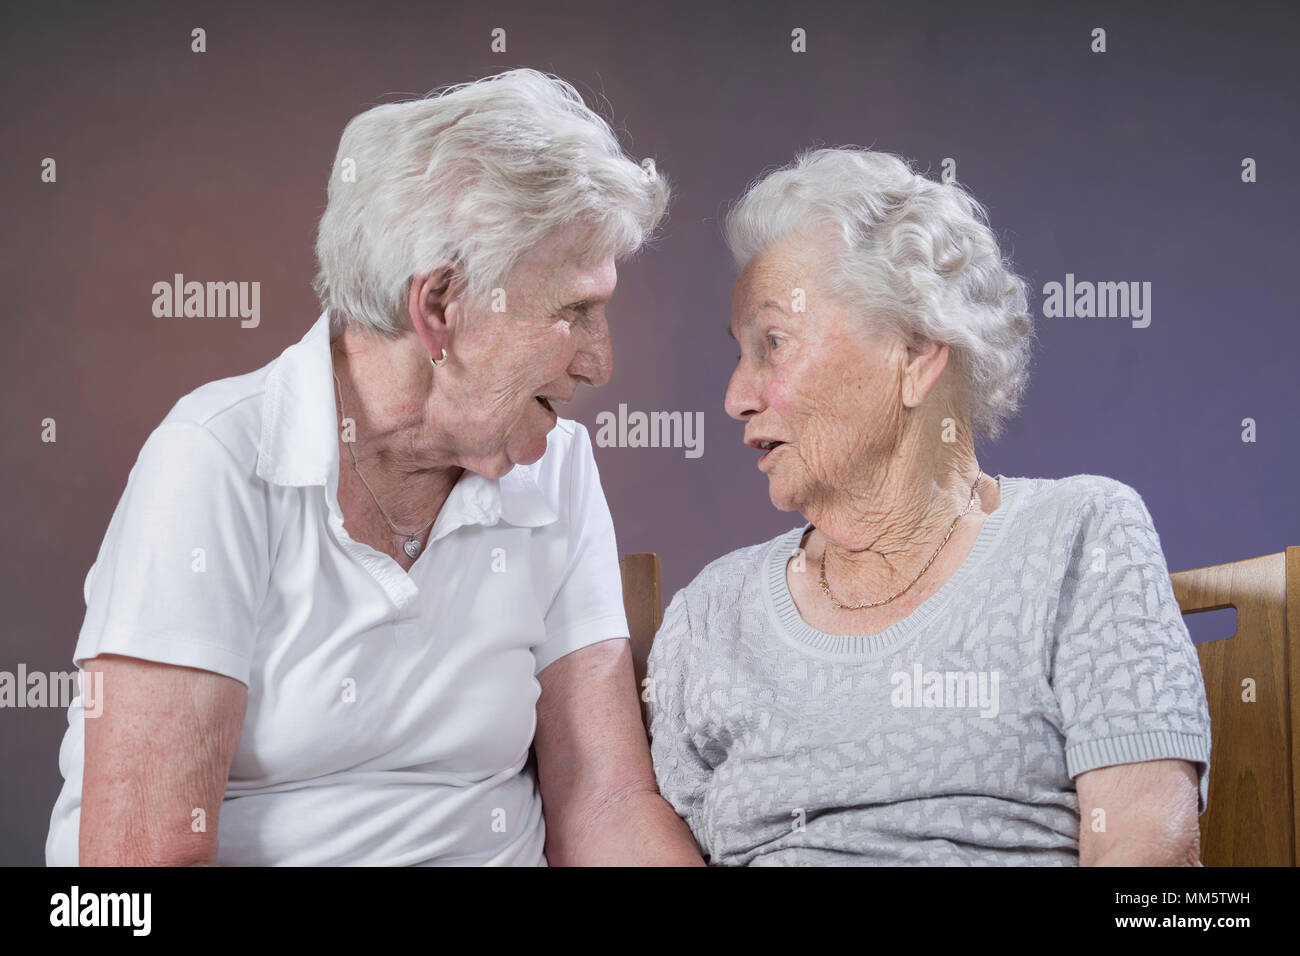 Two senior women talking Stock Photo